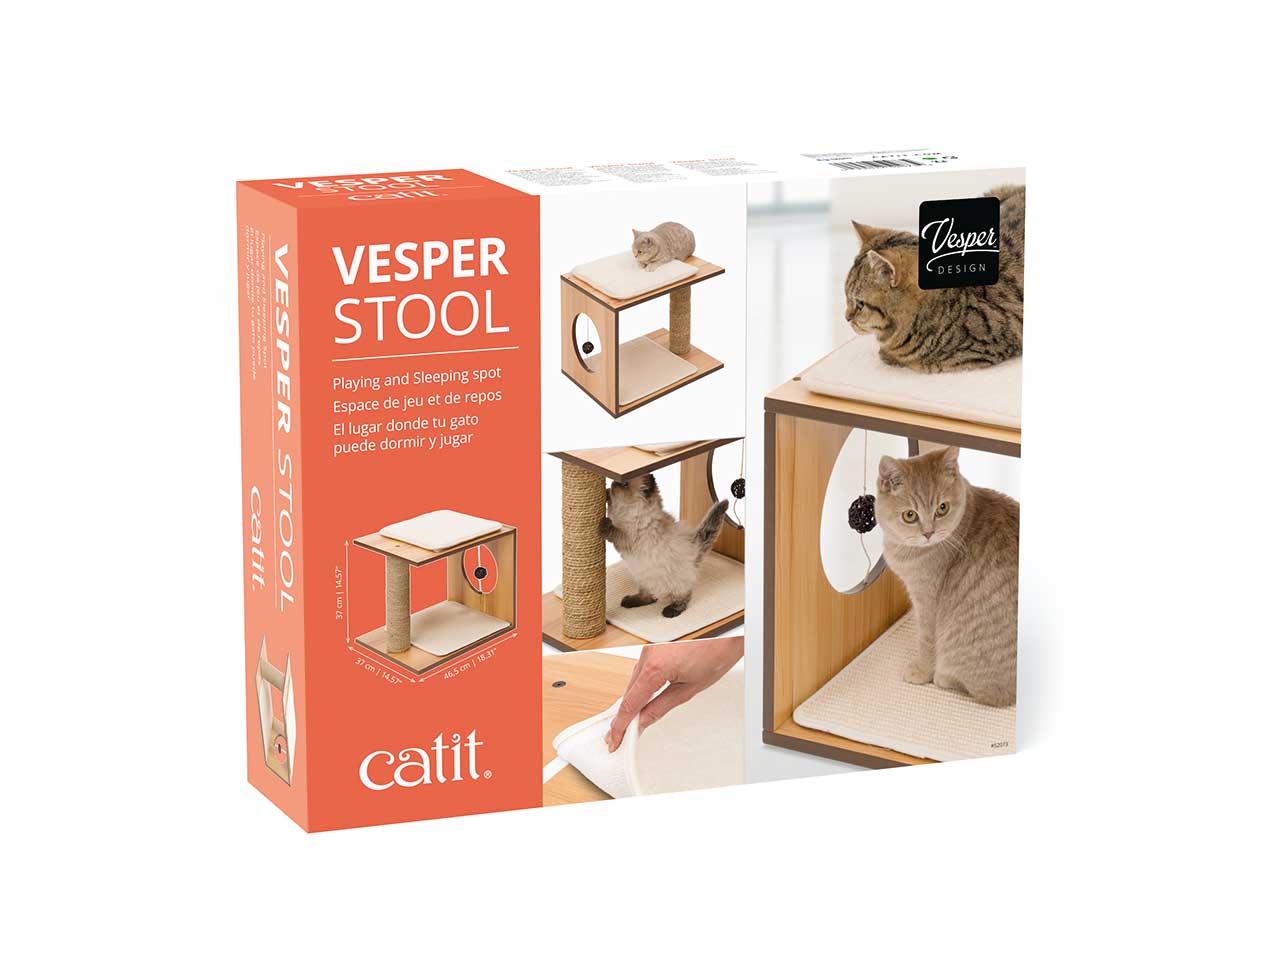 Vesper Stool packaging